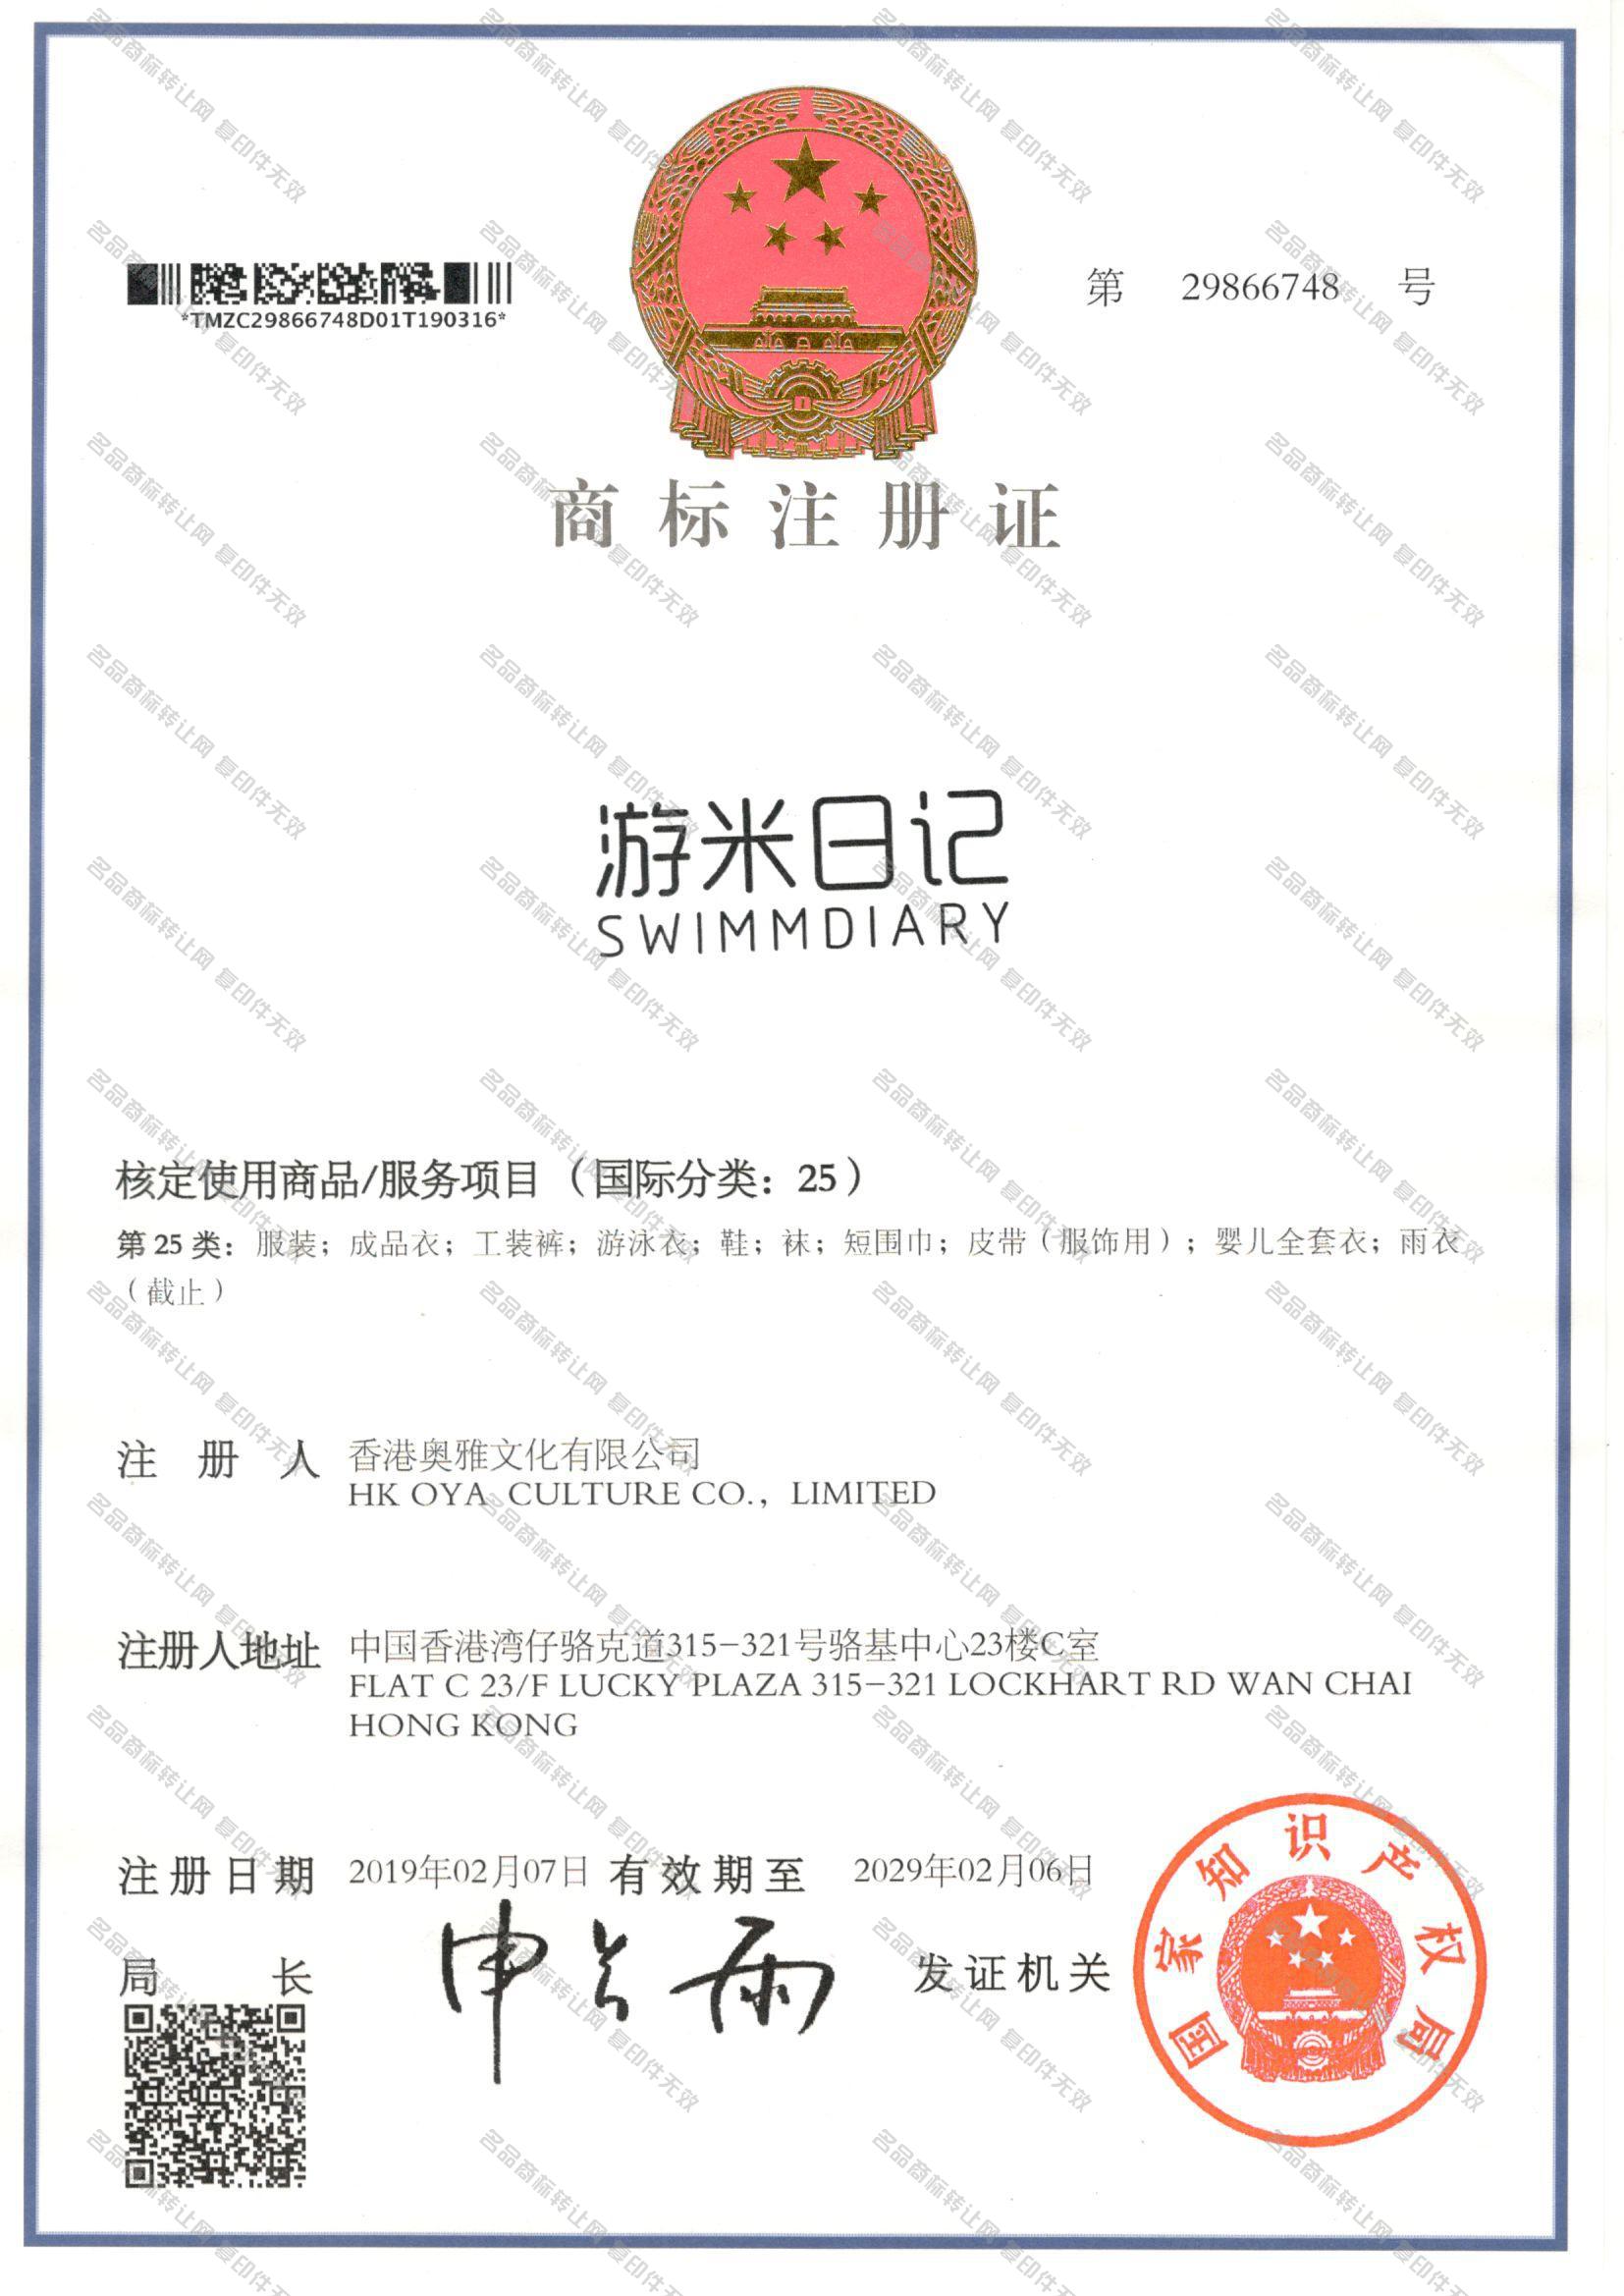 游米日记 SWIMMDIARY注册证